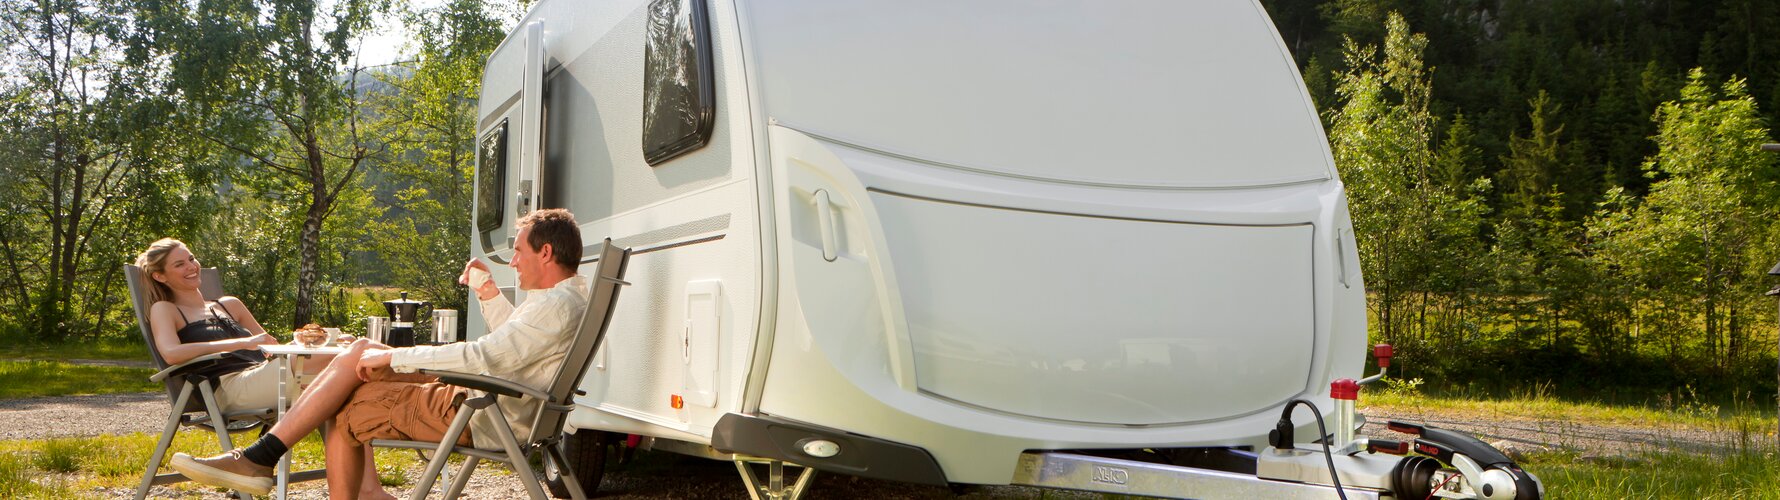 Bulk Lægge sammen Start Sikker og komfortabel parkering af campingvognen | AL-KO